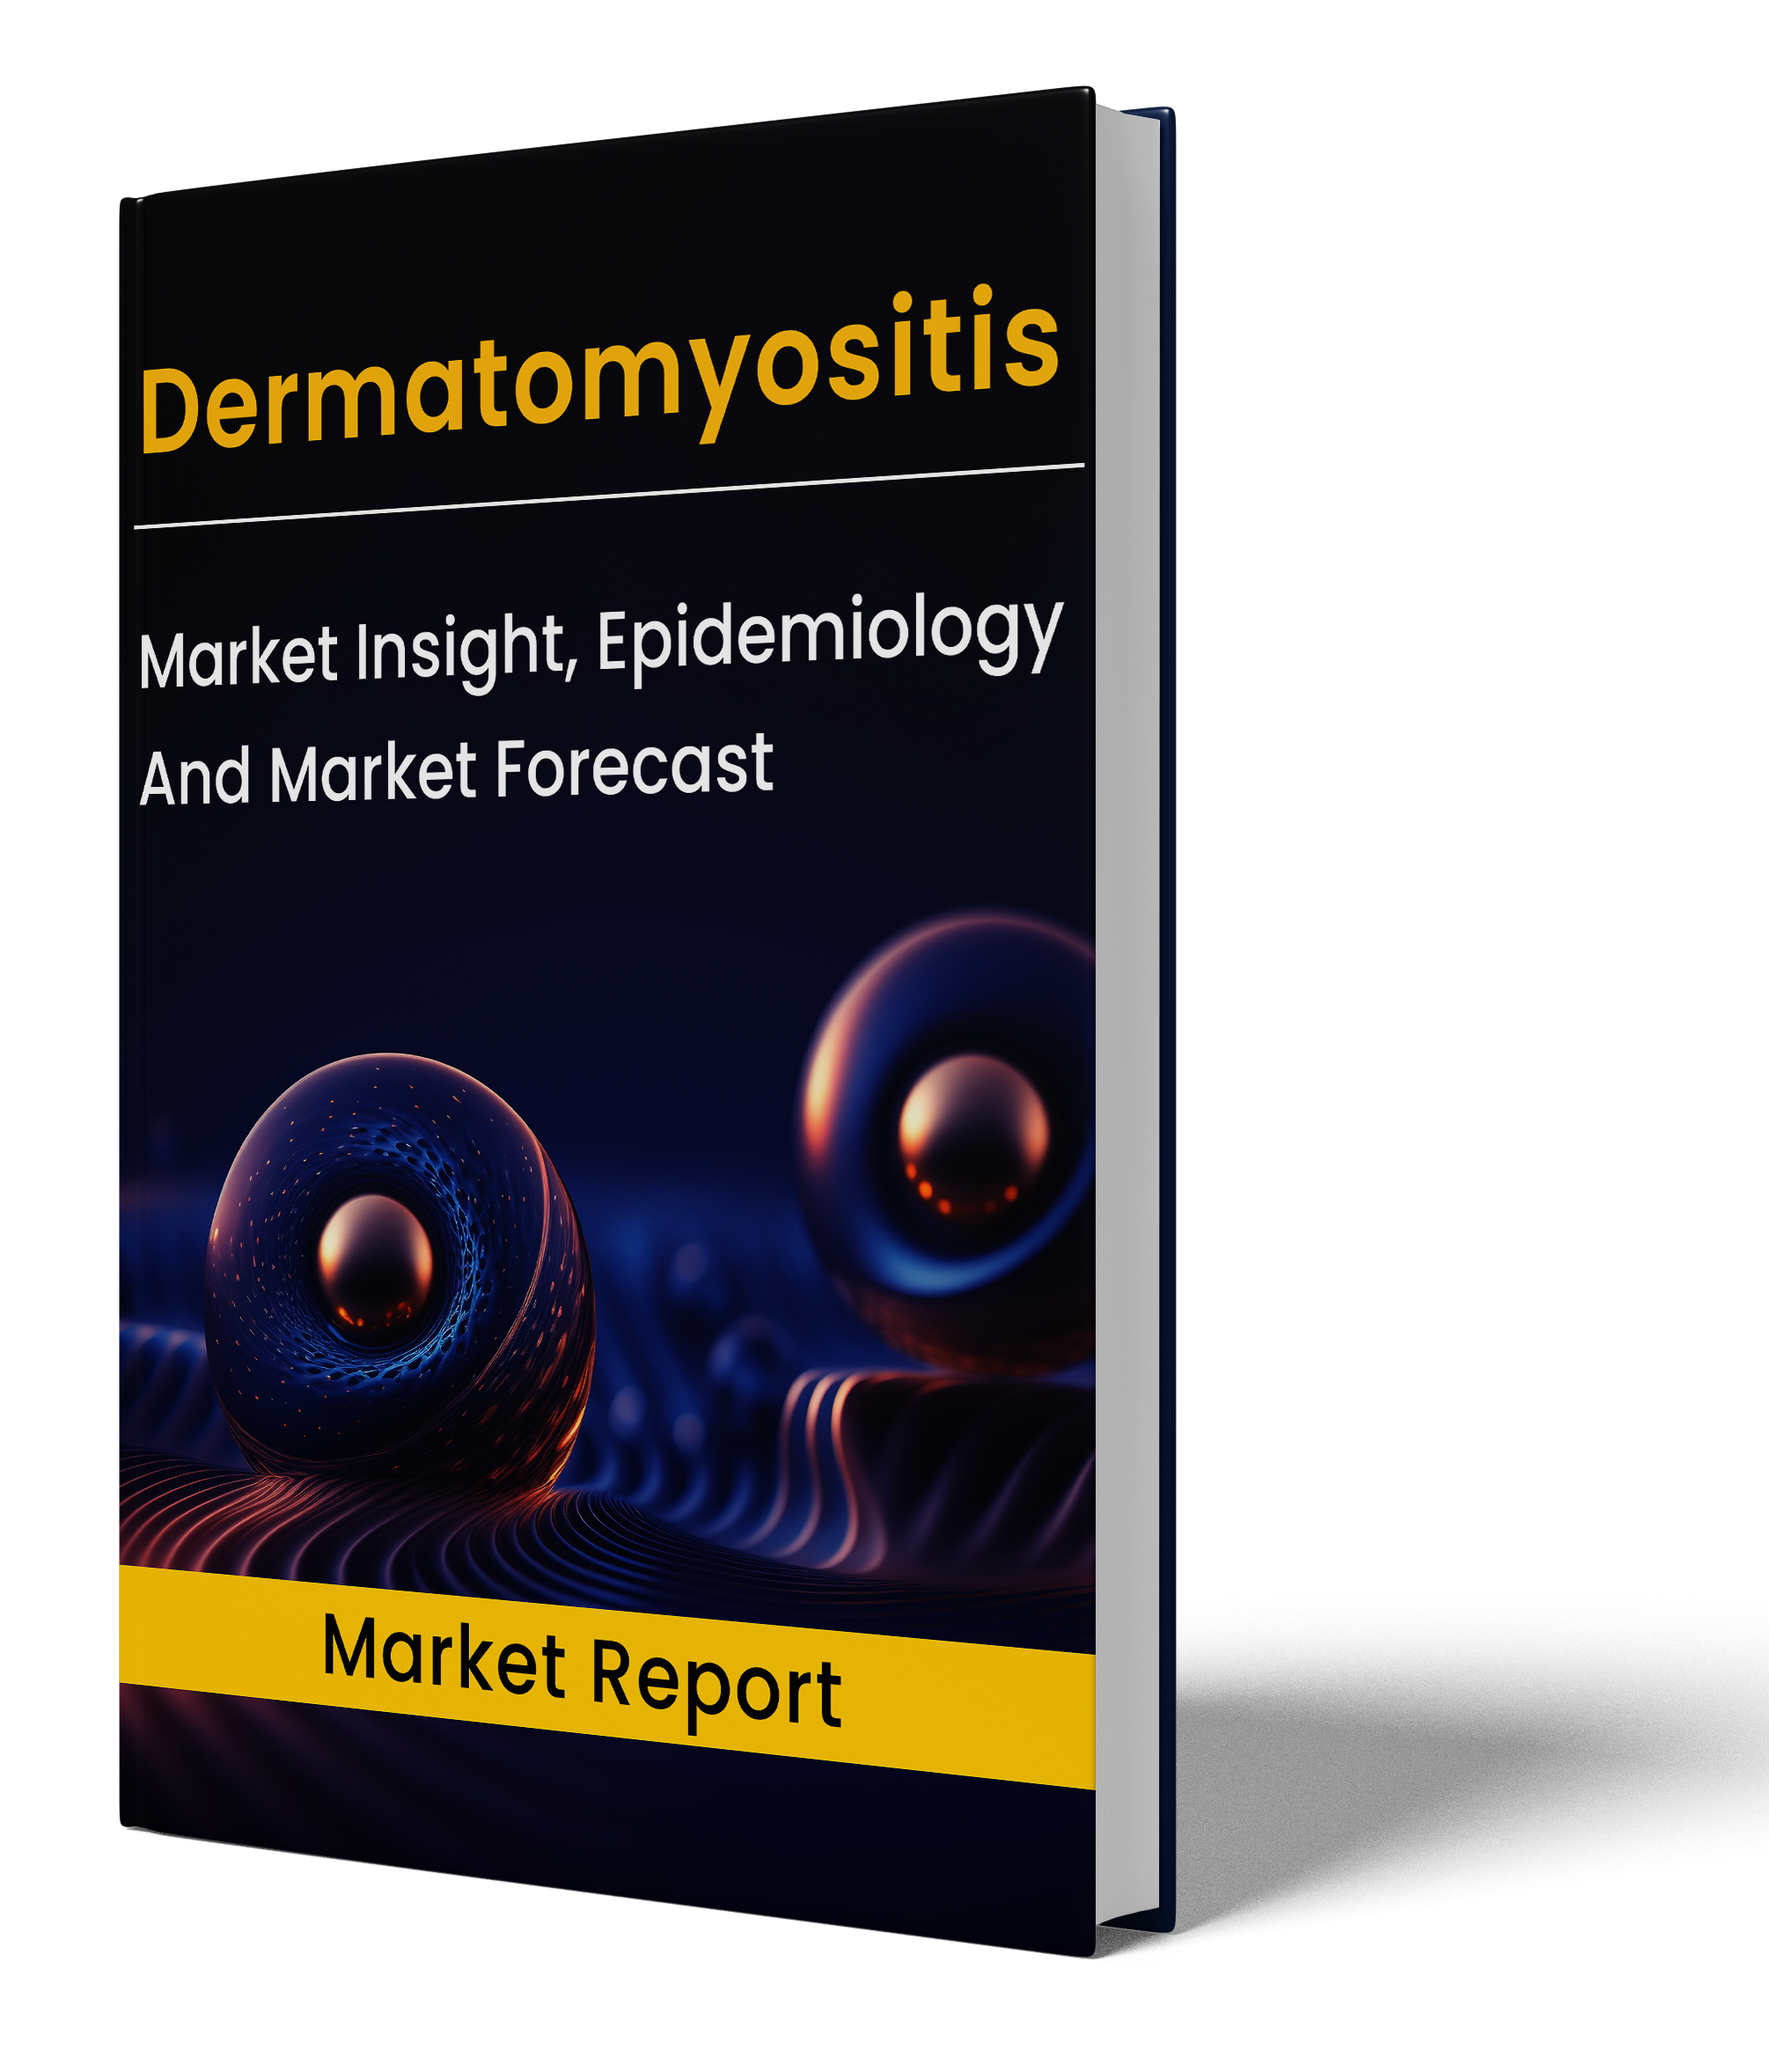 Dermatomyositis market report